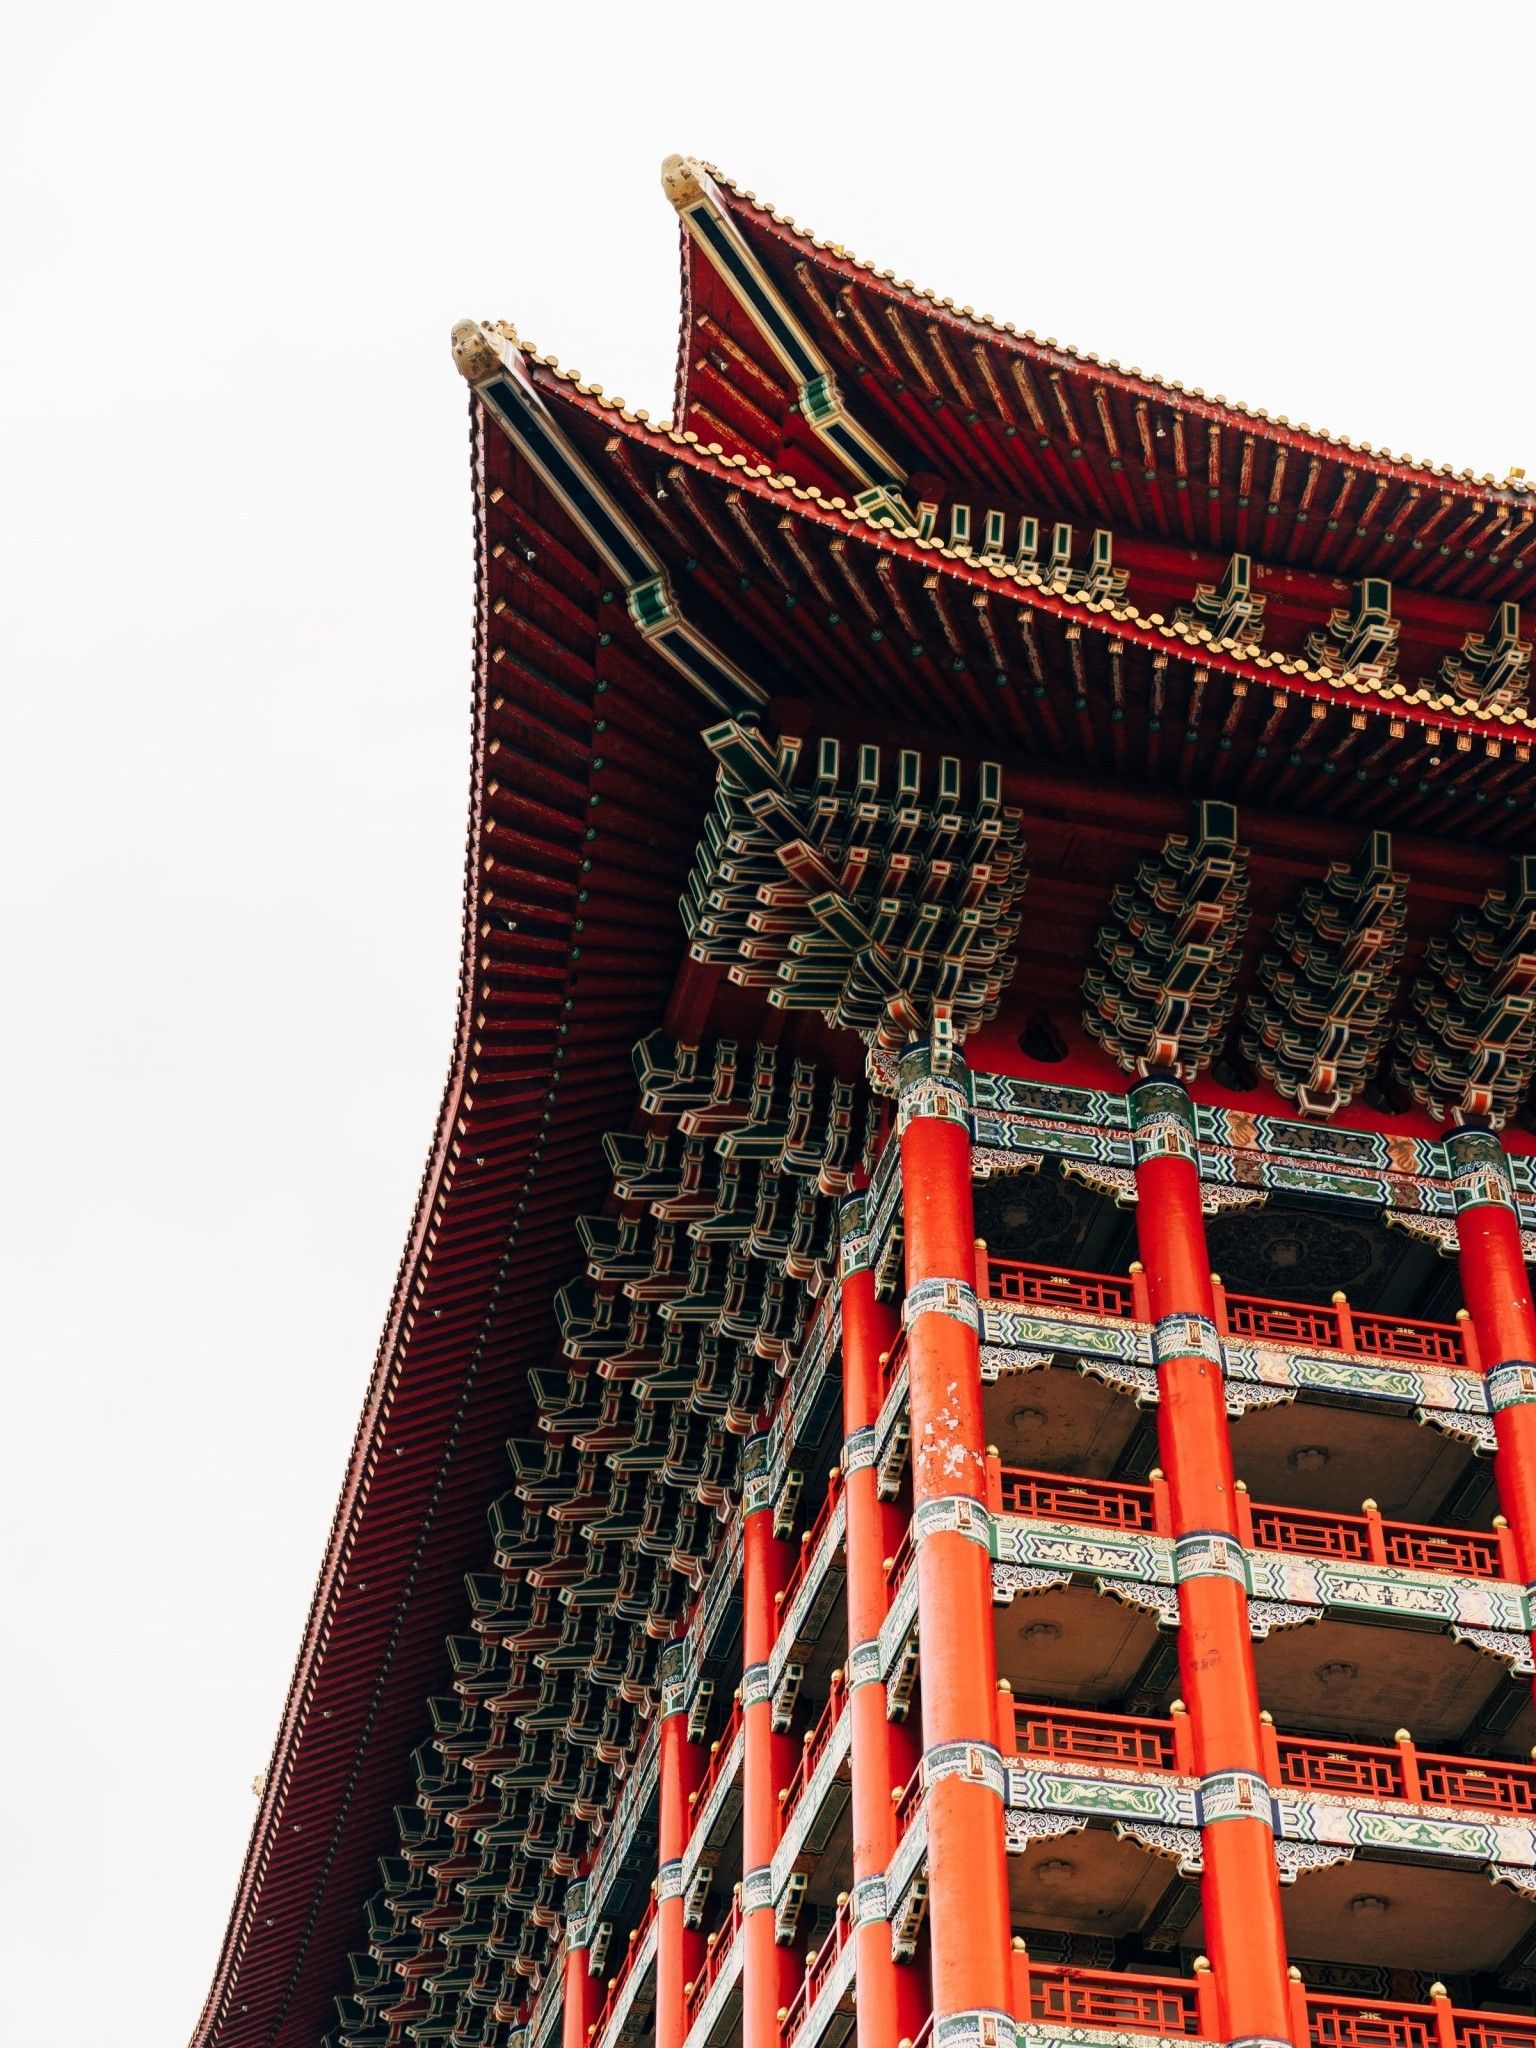 نمای تماشایی full hd از معماری تاریخی کشور چین با تم رنگی قرمز